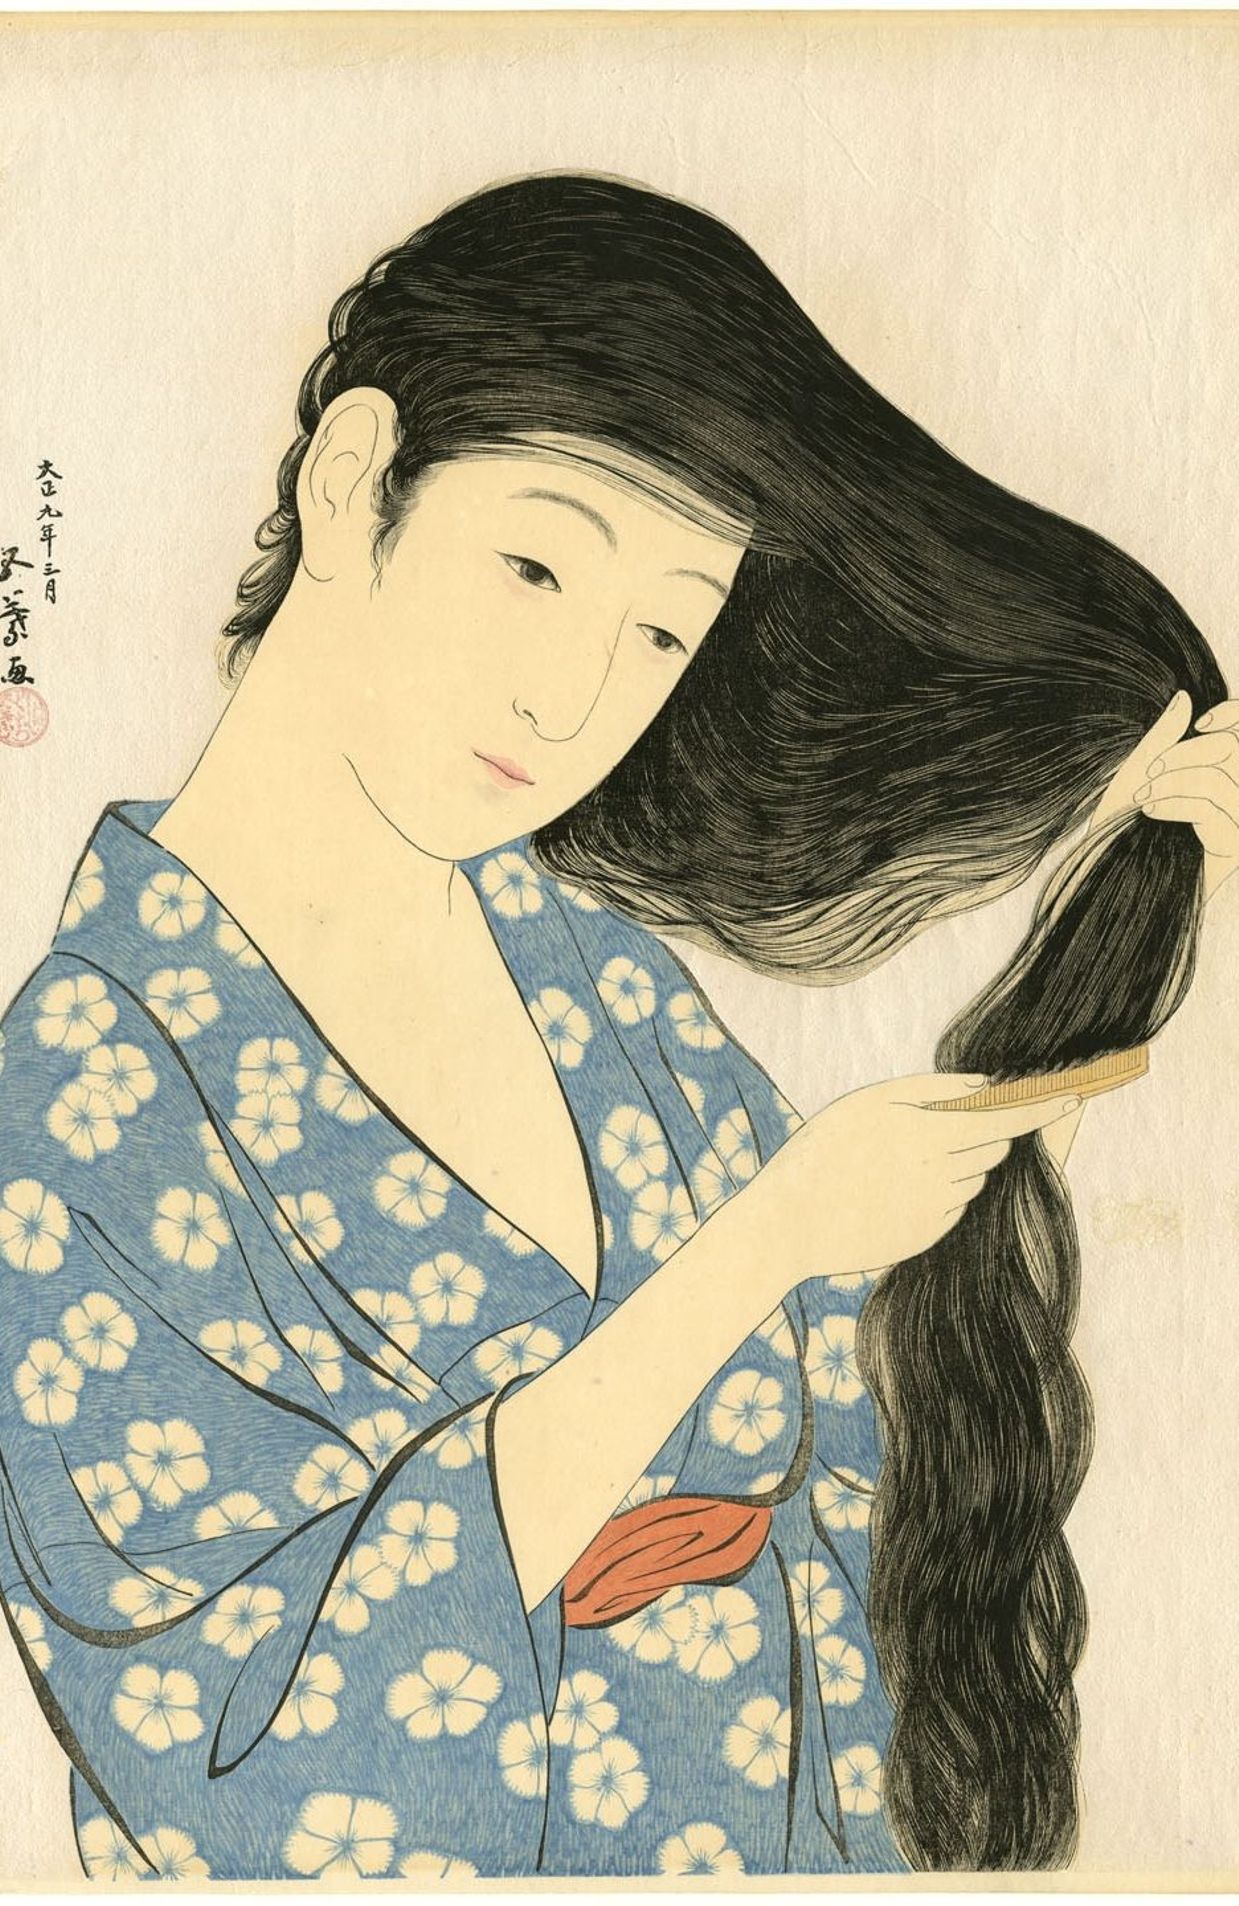 Femme peignant ses cheveux (1920) de Hashiguchi Goyo est l'une des œuvres les plus importantes du mouvement Shin hanga